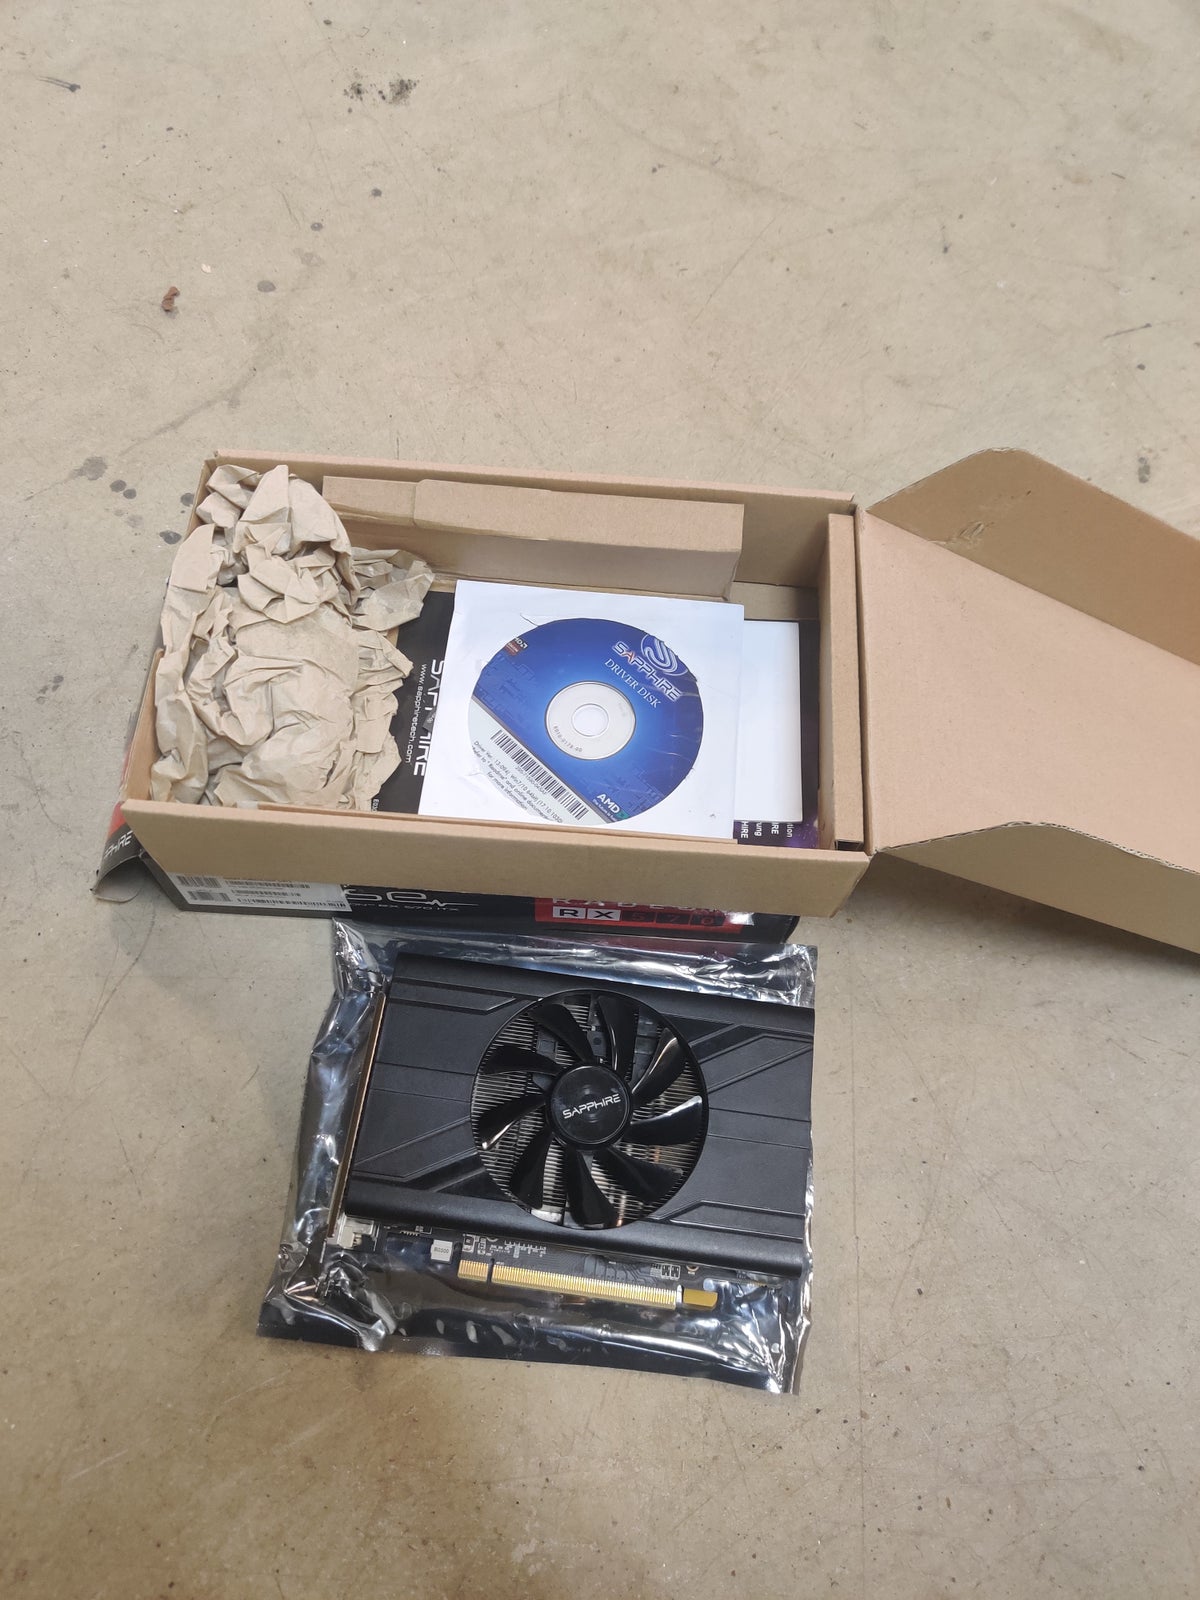 Radeon RX 570 ITX Sapphire, 4 GB RAM, Perfekt